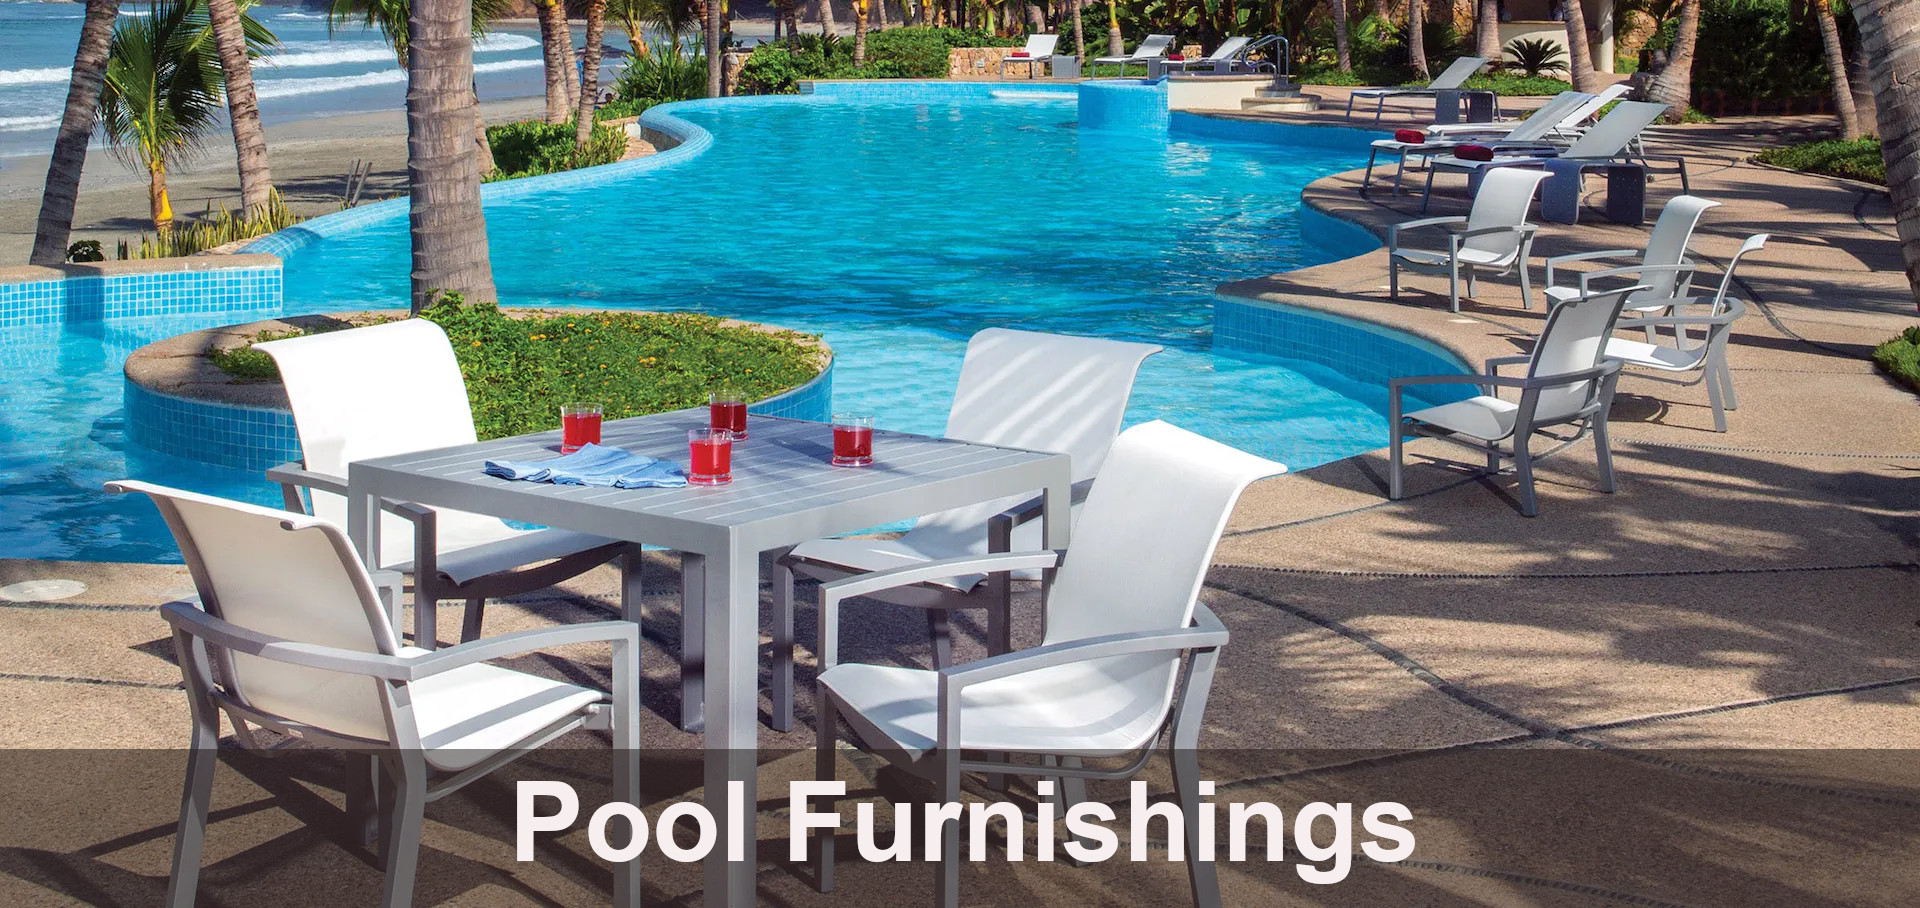 Pool Furnishings